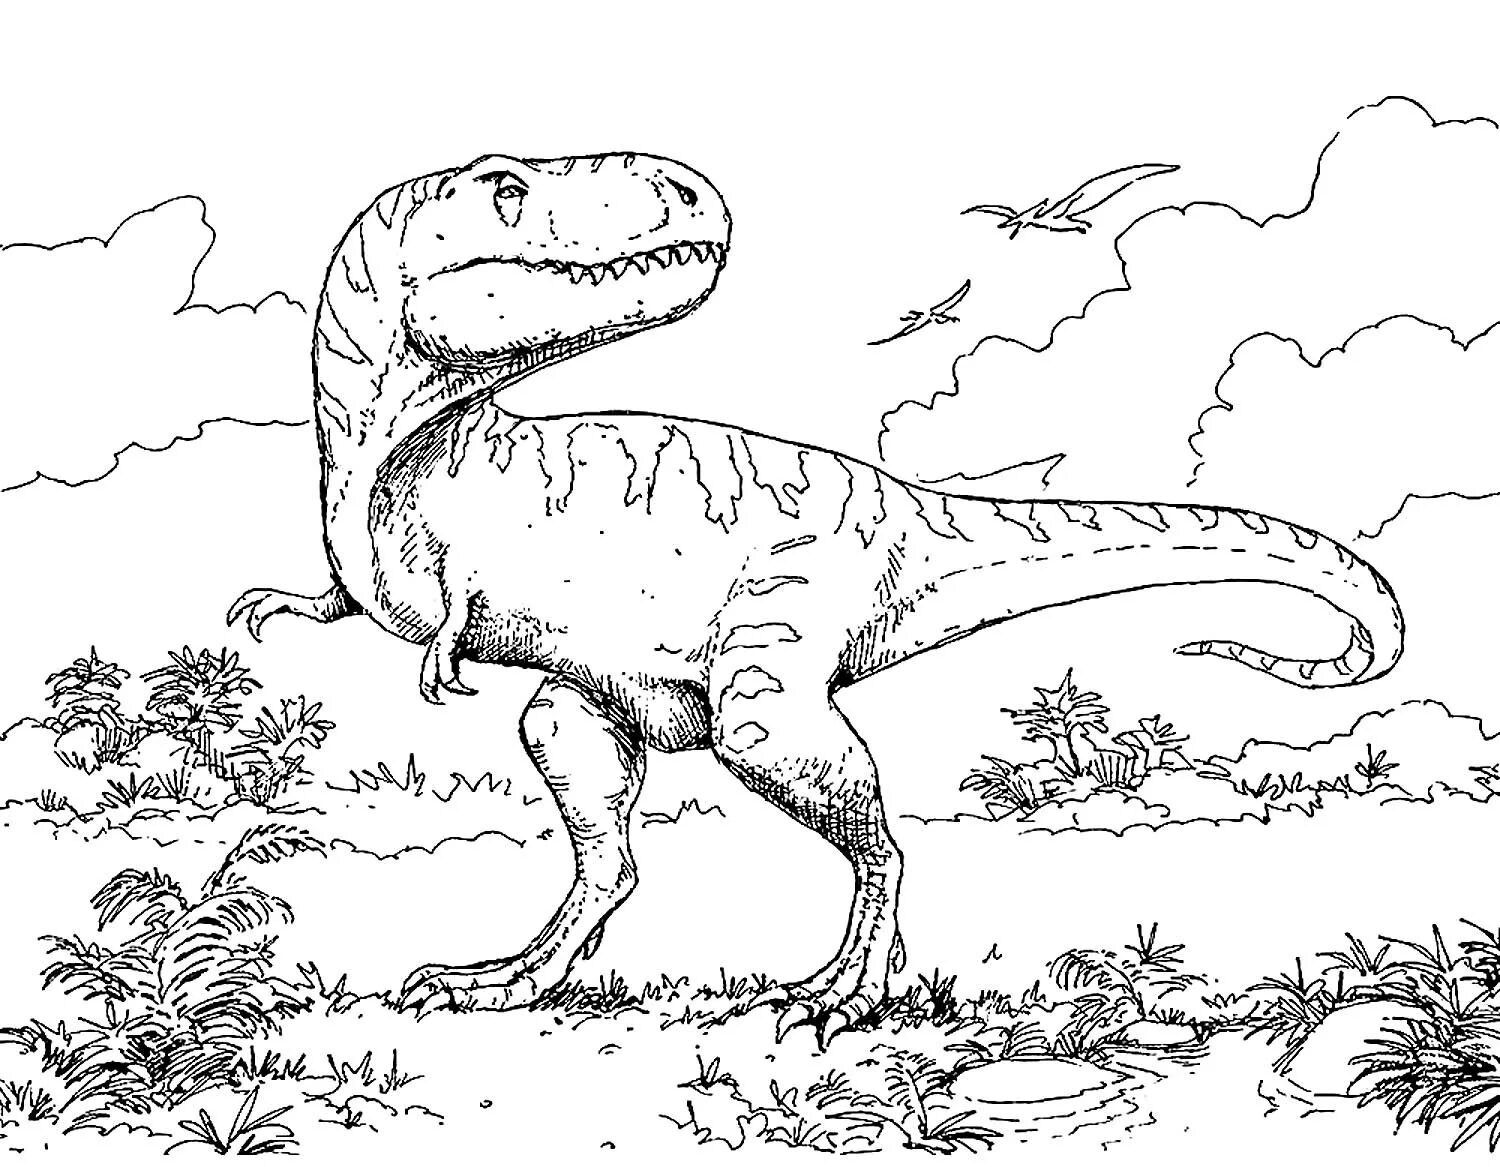 Динозавры раскраска а4. Раскраска динозавры мир Юрского периода. Раскраска Тираннозавр рекс мир Юрского периода. Раскраска динозавр Аллозавр.